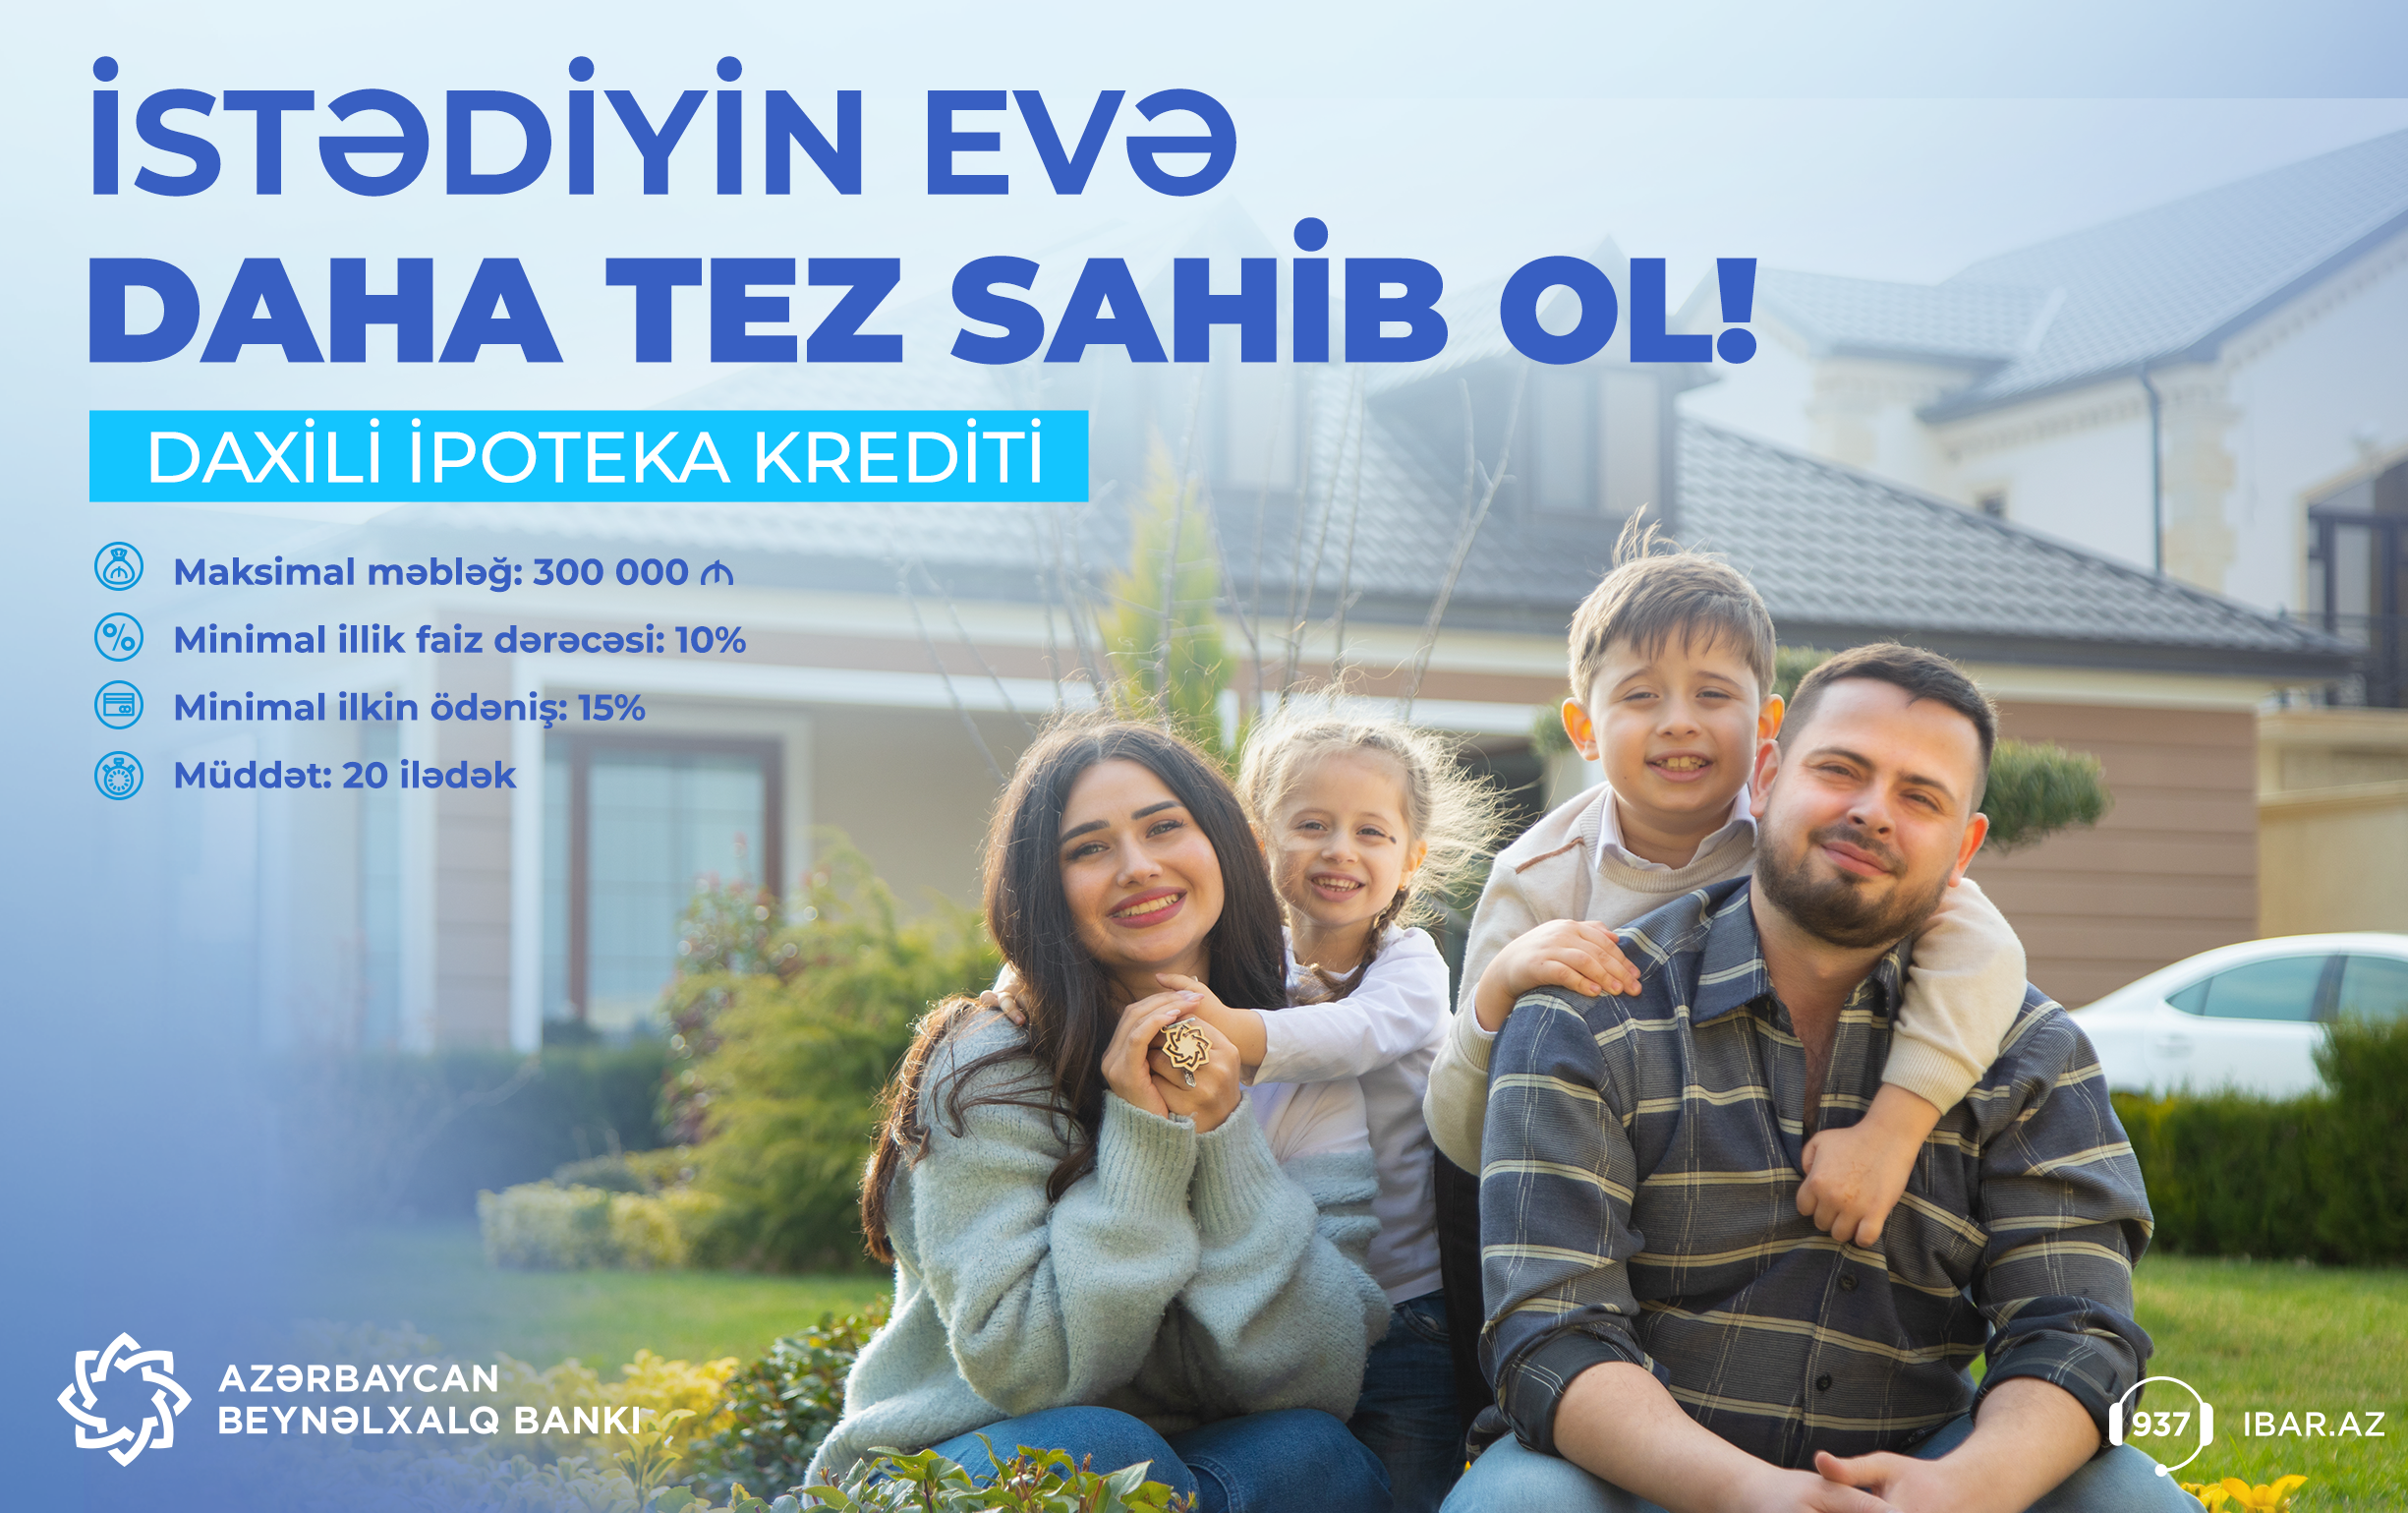 Azərbaycan Beynəlxalq Bankından 300.000  manatadək daxili ipoteka krediti!